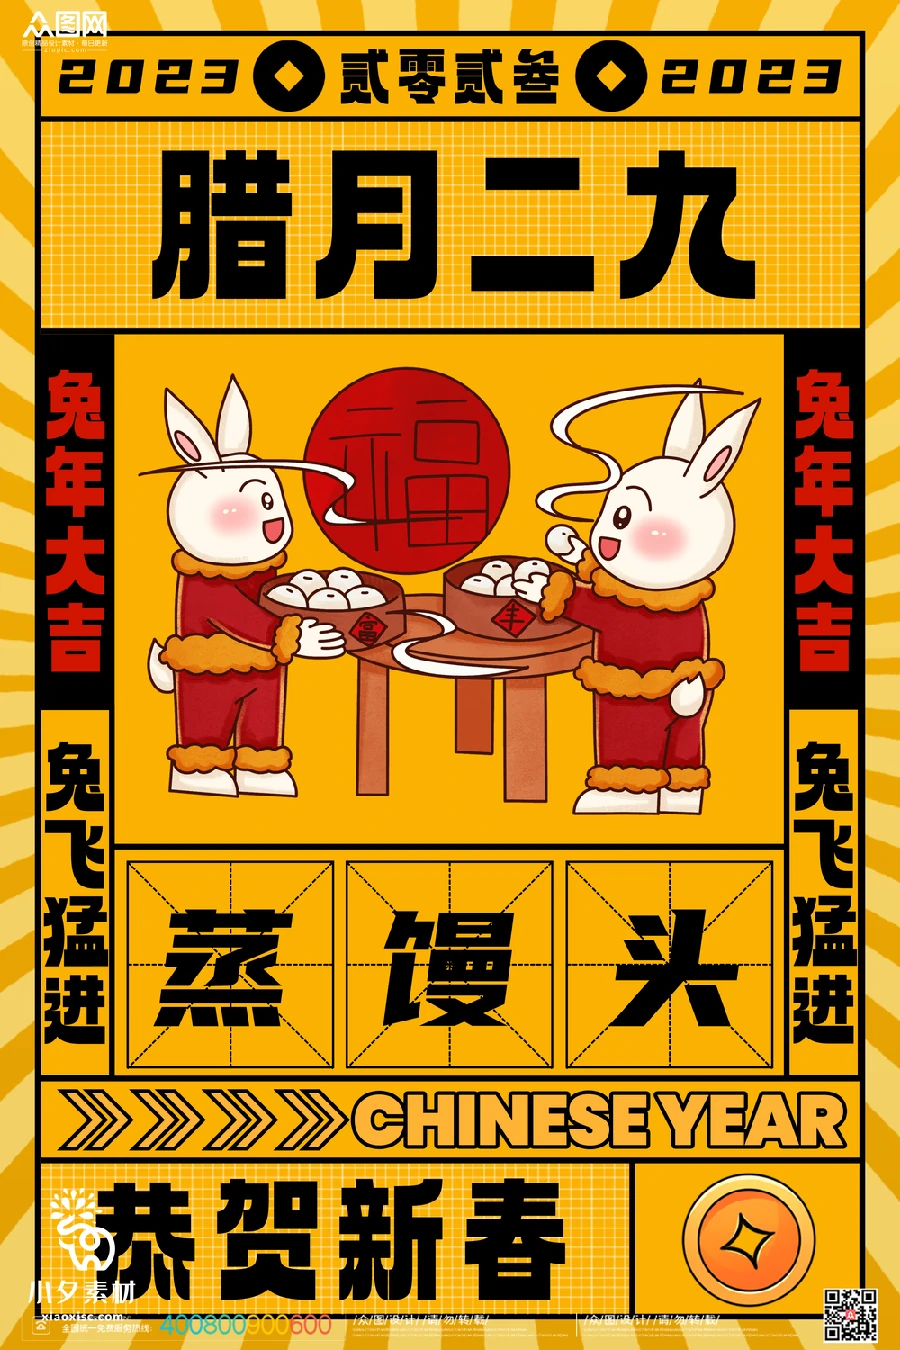 2023兔年新年传统节日年俗过年拜年习俗节气系列海报PSD设计素材【089】